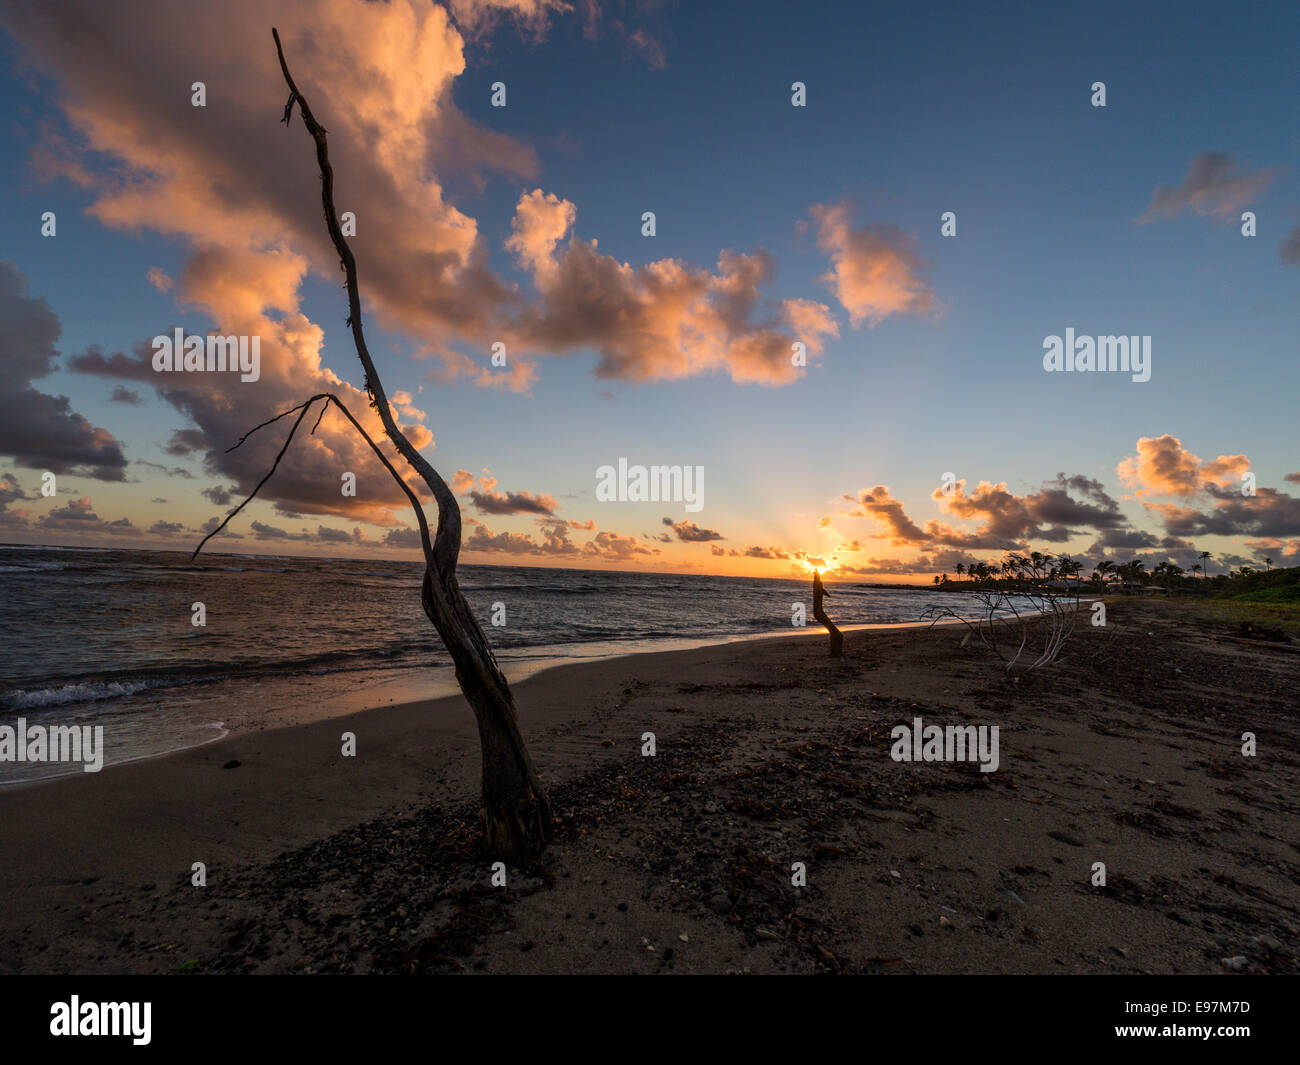 Paesaggio - il sorgere del sole dietro una nuvola la formazione in background con Long Haul Bay Beach e il mare dei Caraibi in primo piano. Foto Stock